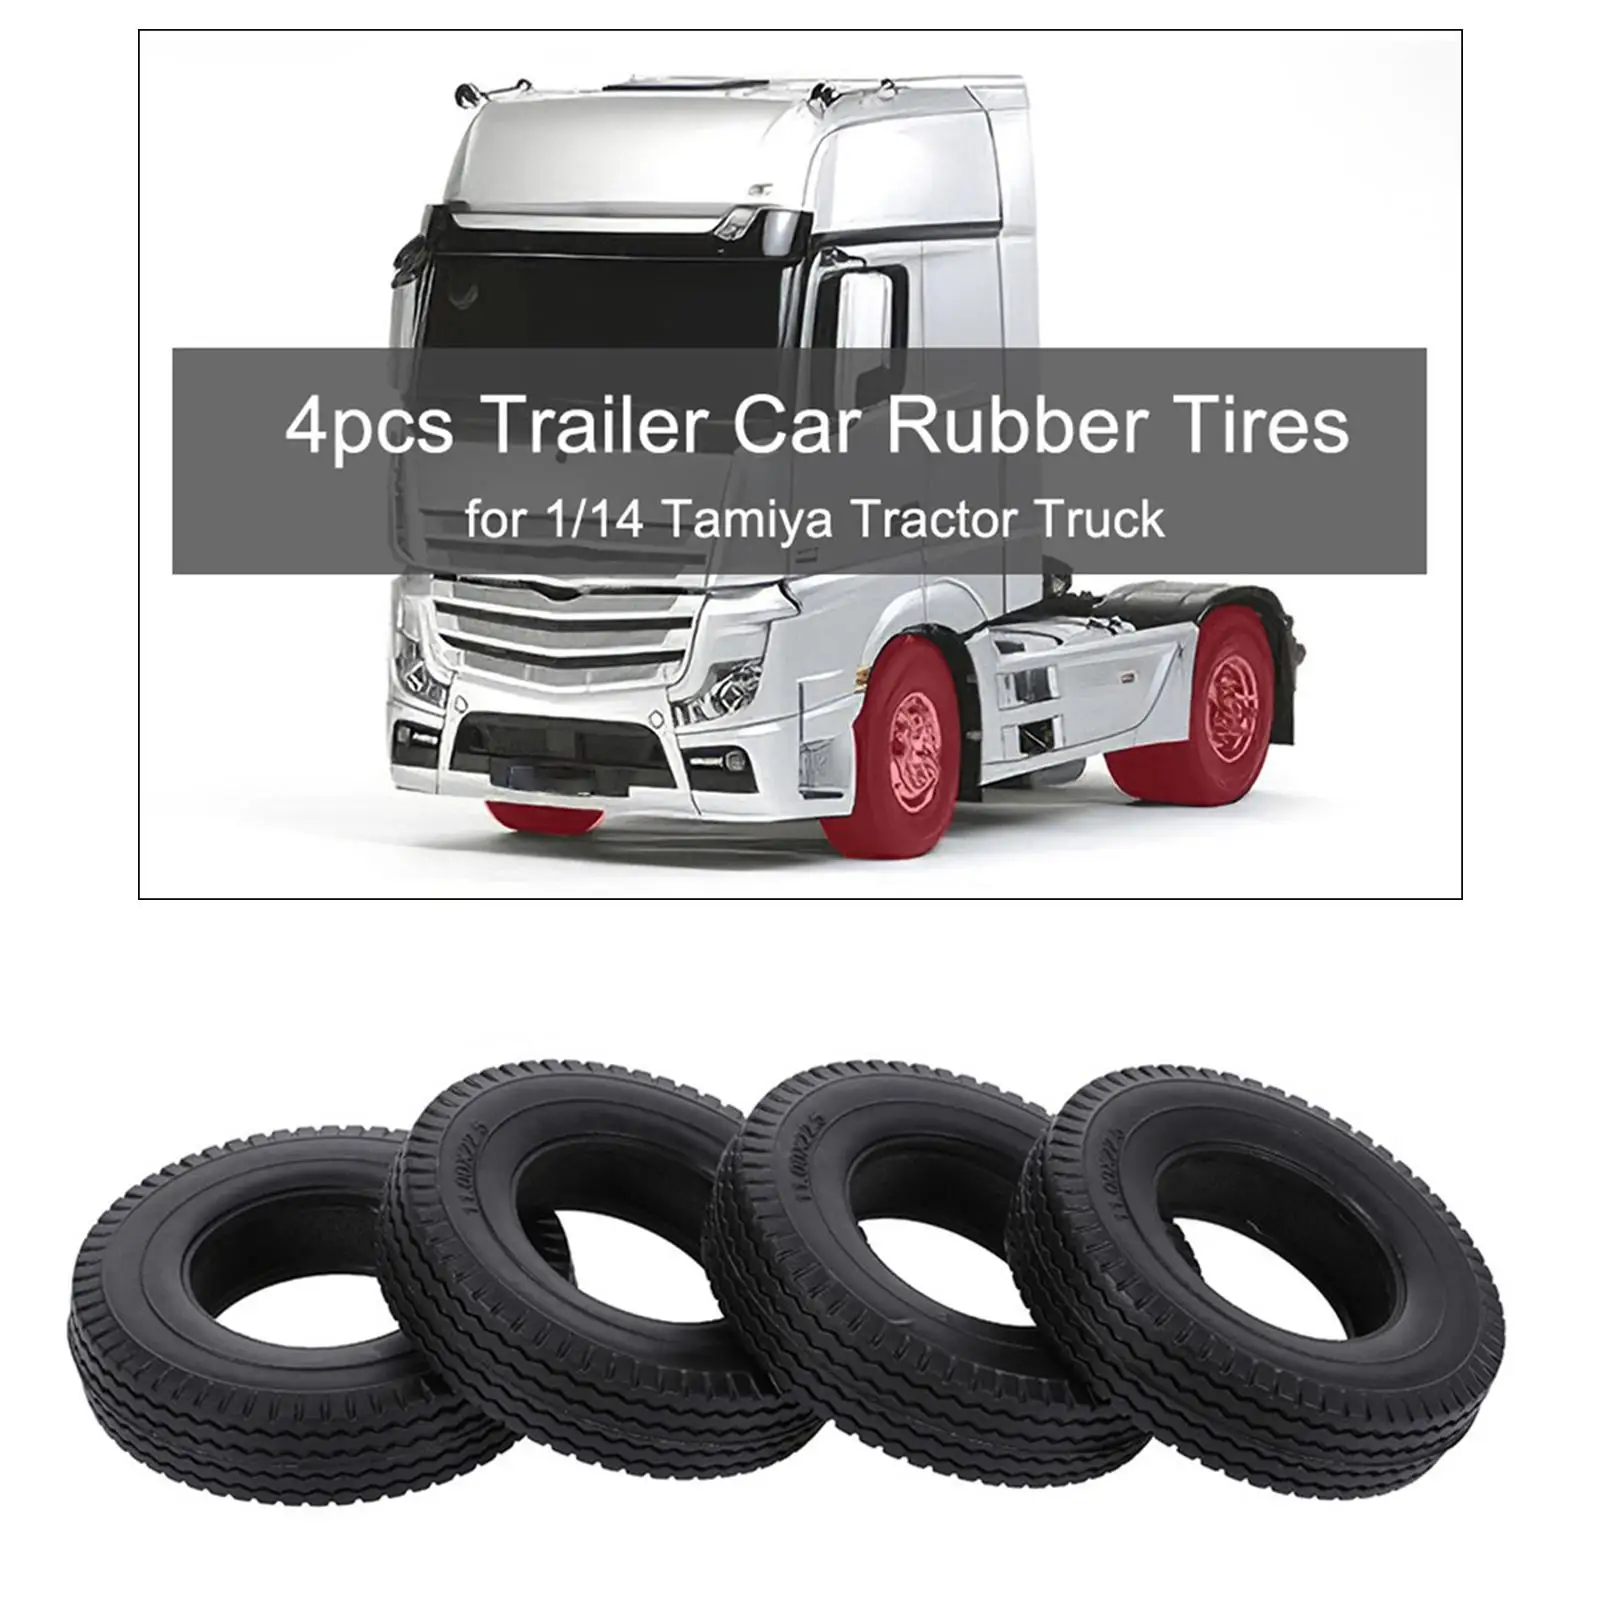 Шины для автомодели RC Car, 4 шт. из высокопрочной резины, износостойкие, размером 85х20 мм, подходят для грузовой автомодели Tamiya 1/14 Truck Tractor.